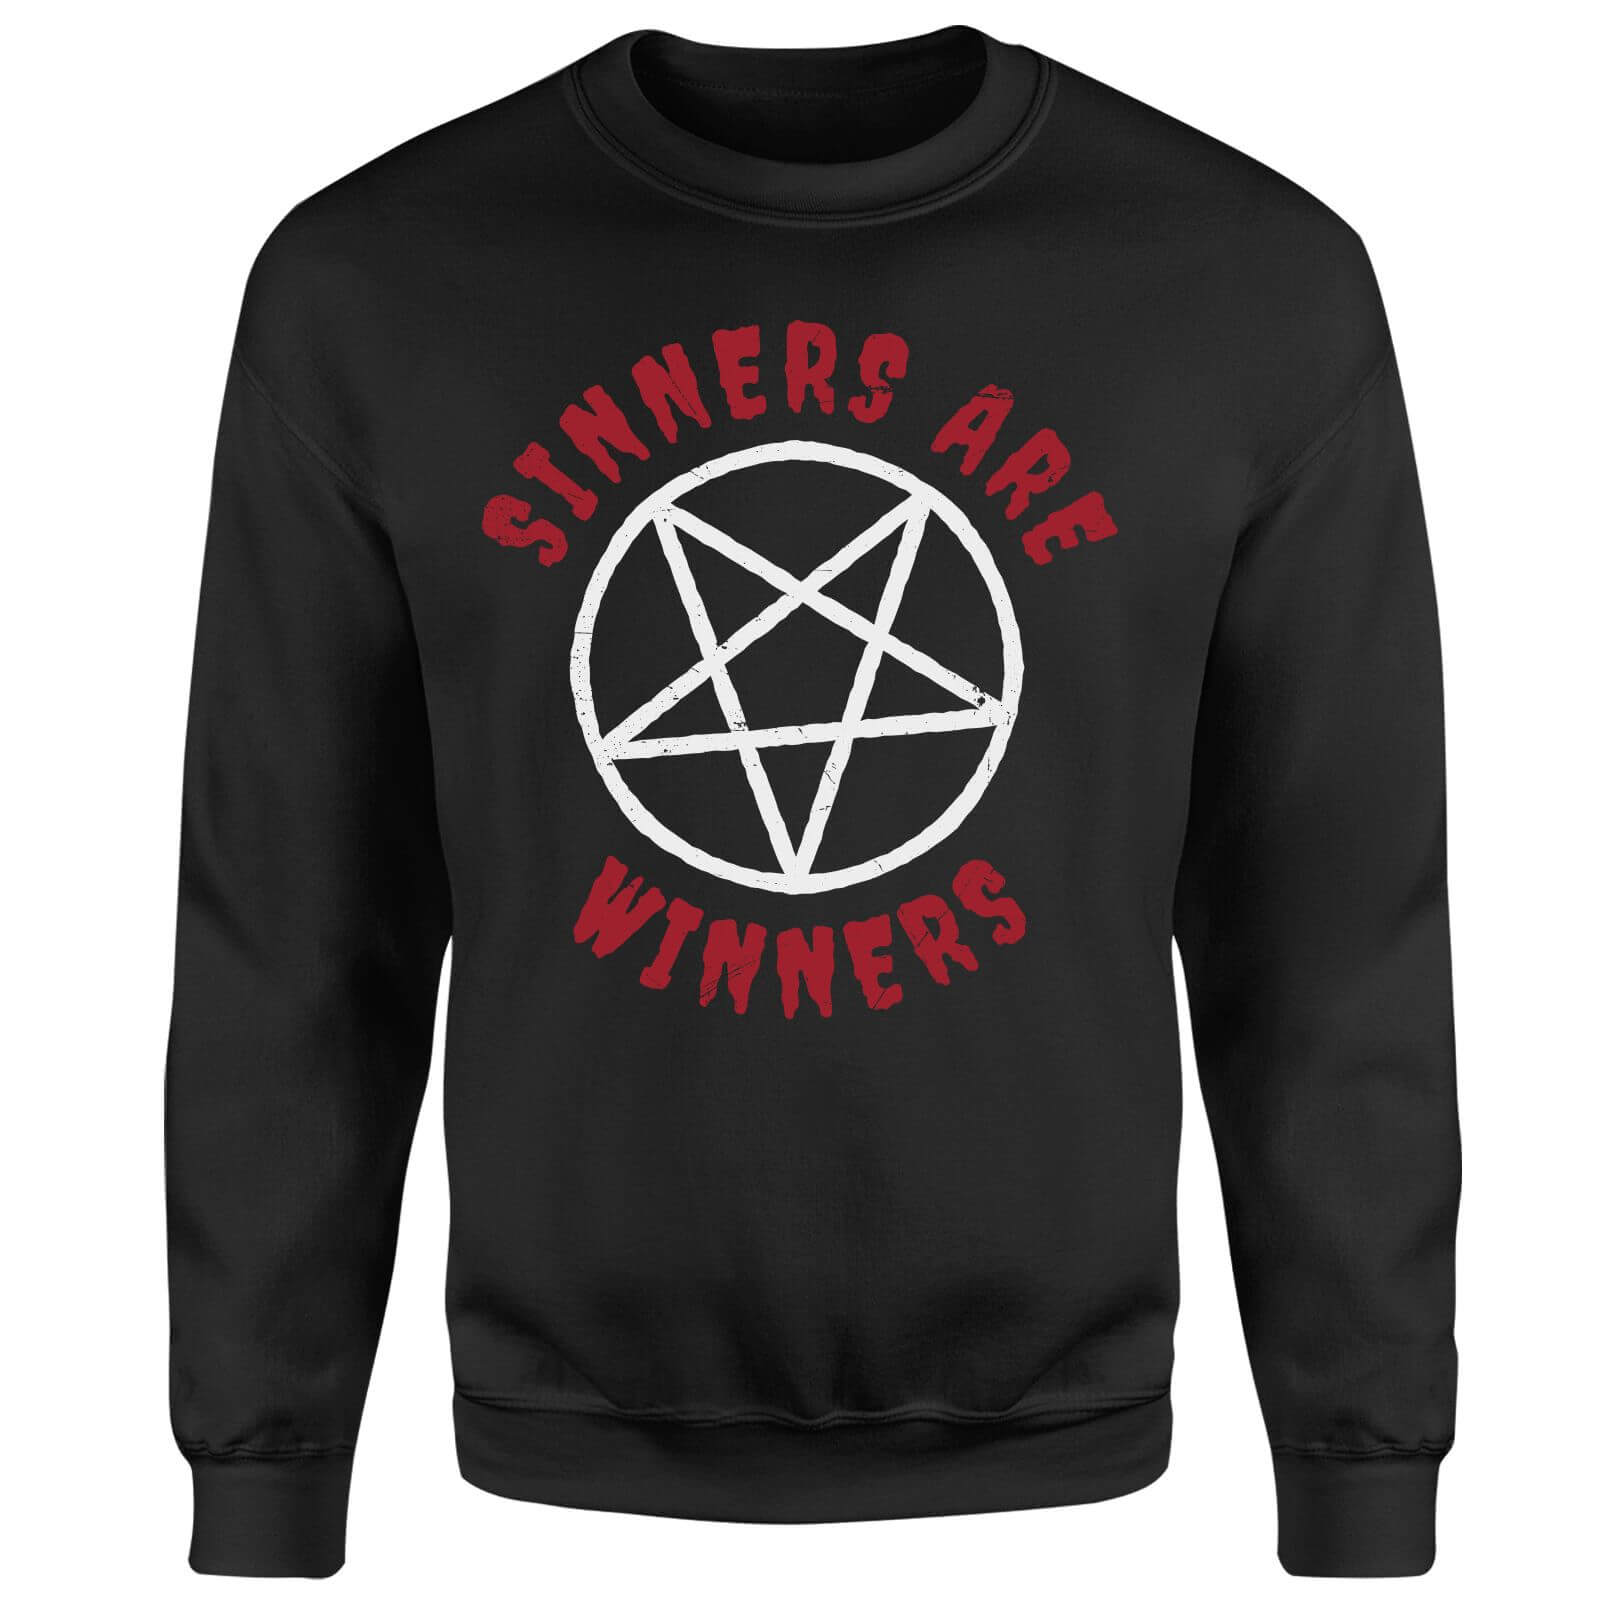 Sinners Are Winners Sweatshirt - Black - XL